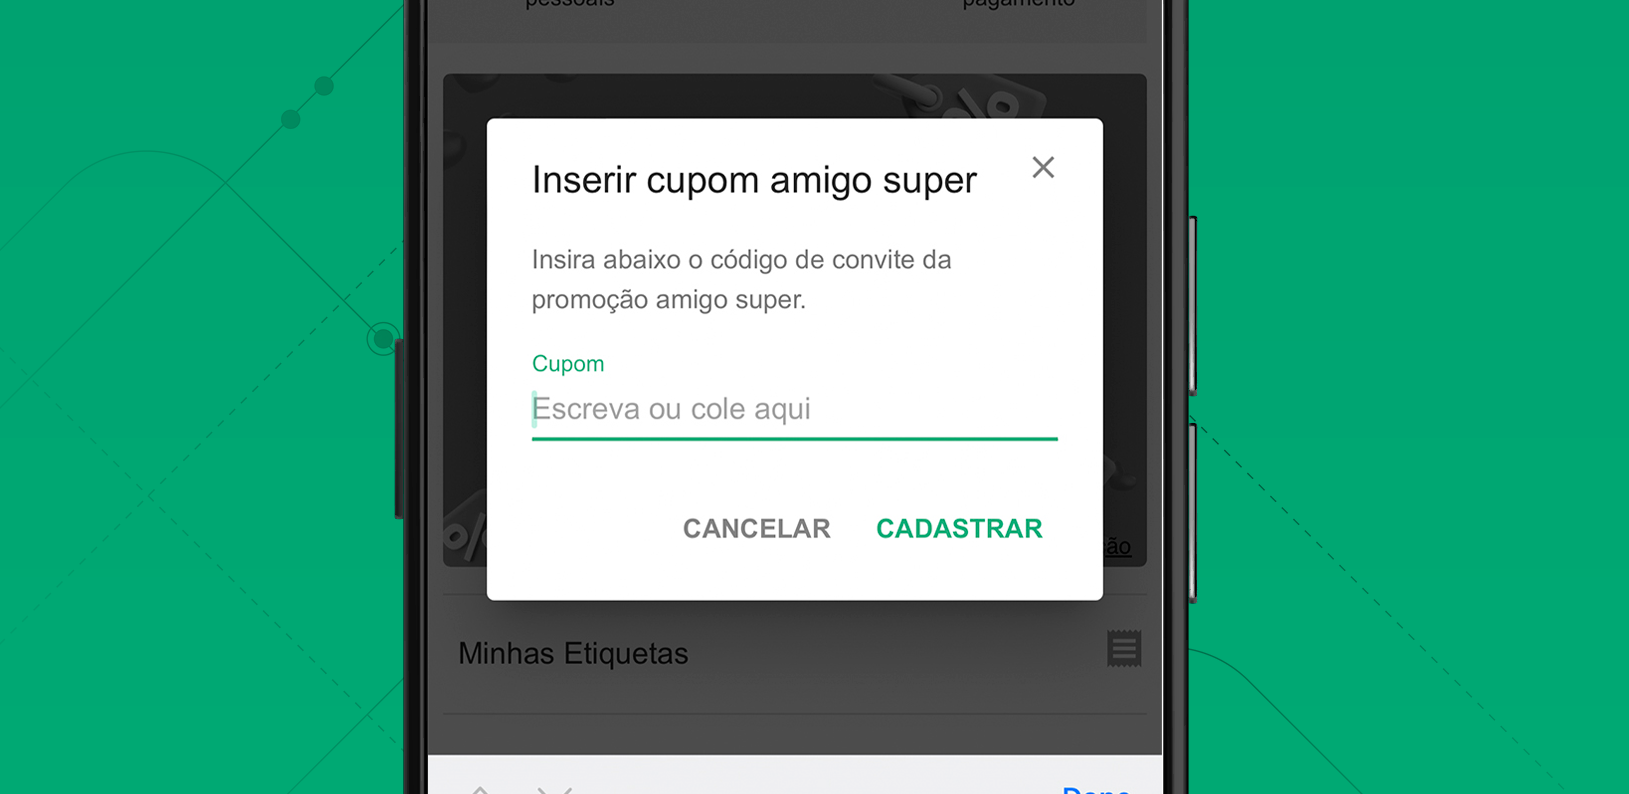 Print da tela do app SuperFrete para inserir cupom do Amigo Super